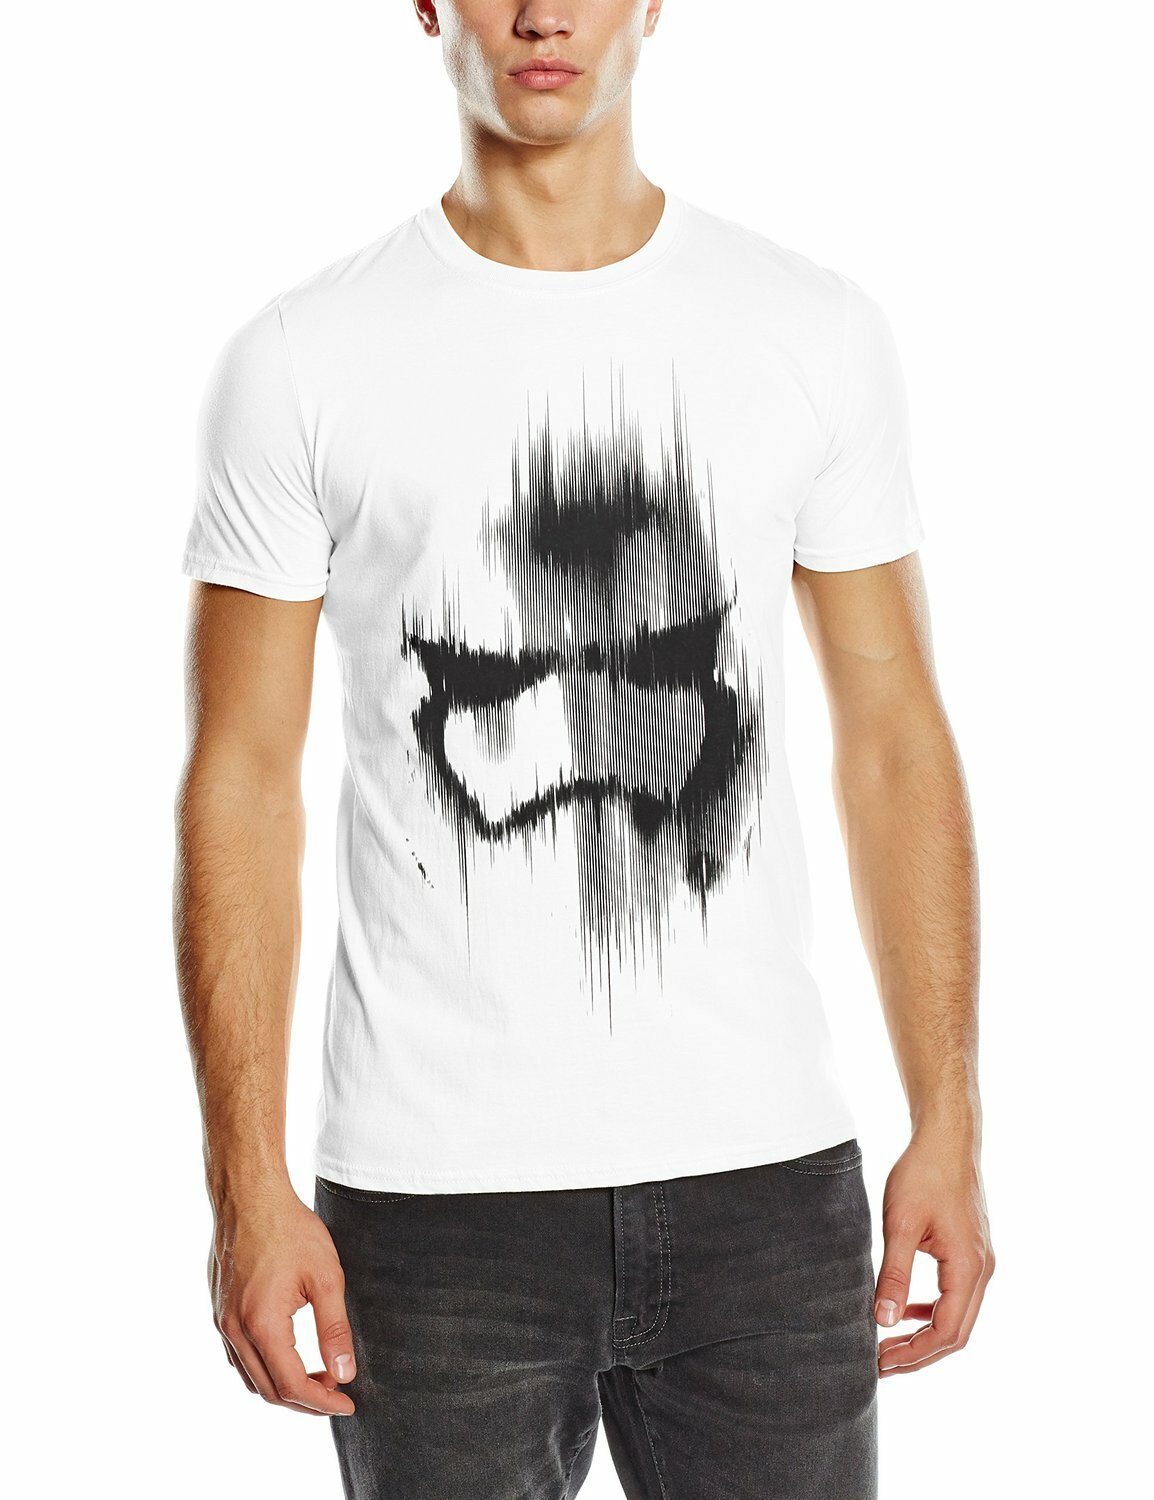 Star Wars Trooper t-shirt